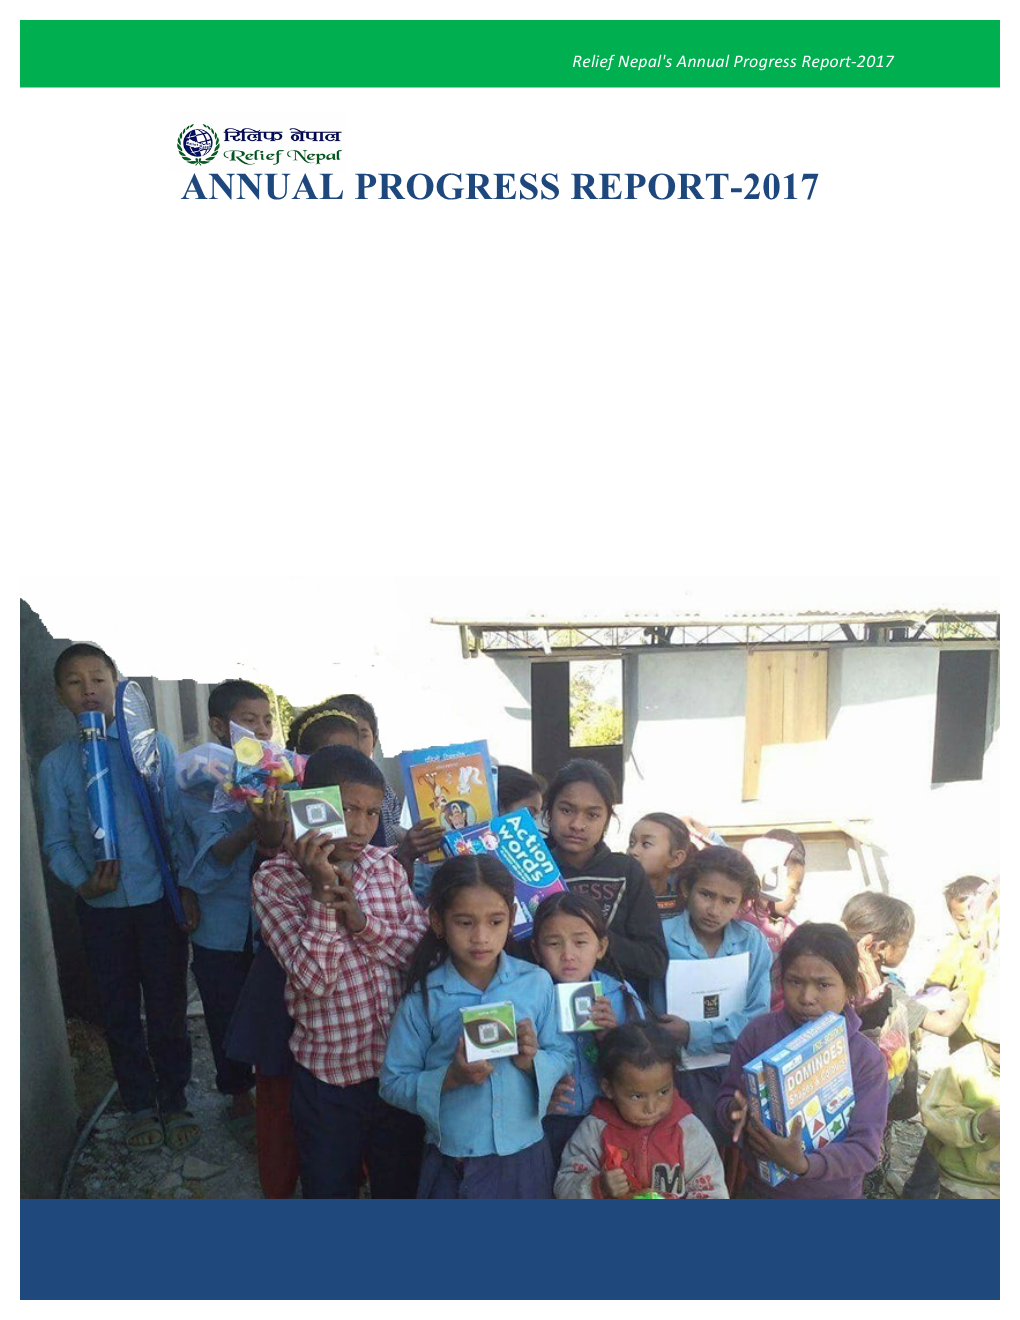 Annual Progress Report-2017